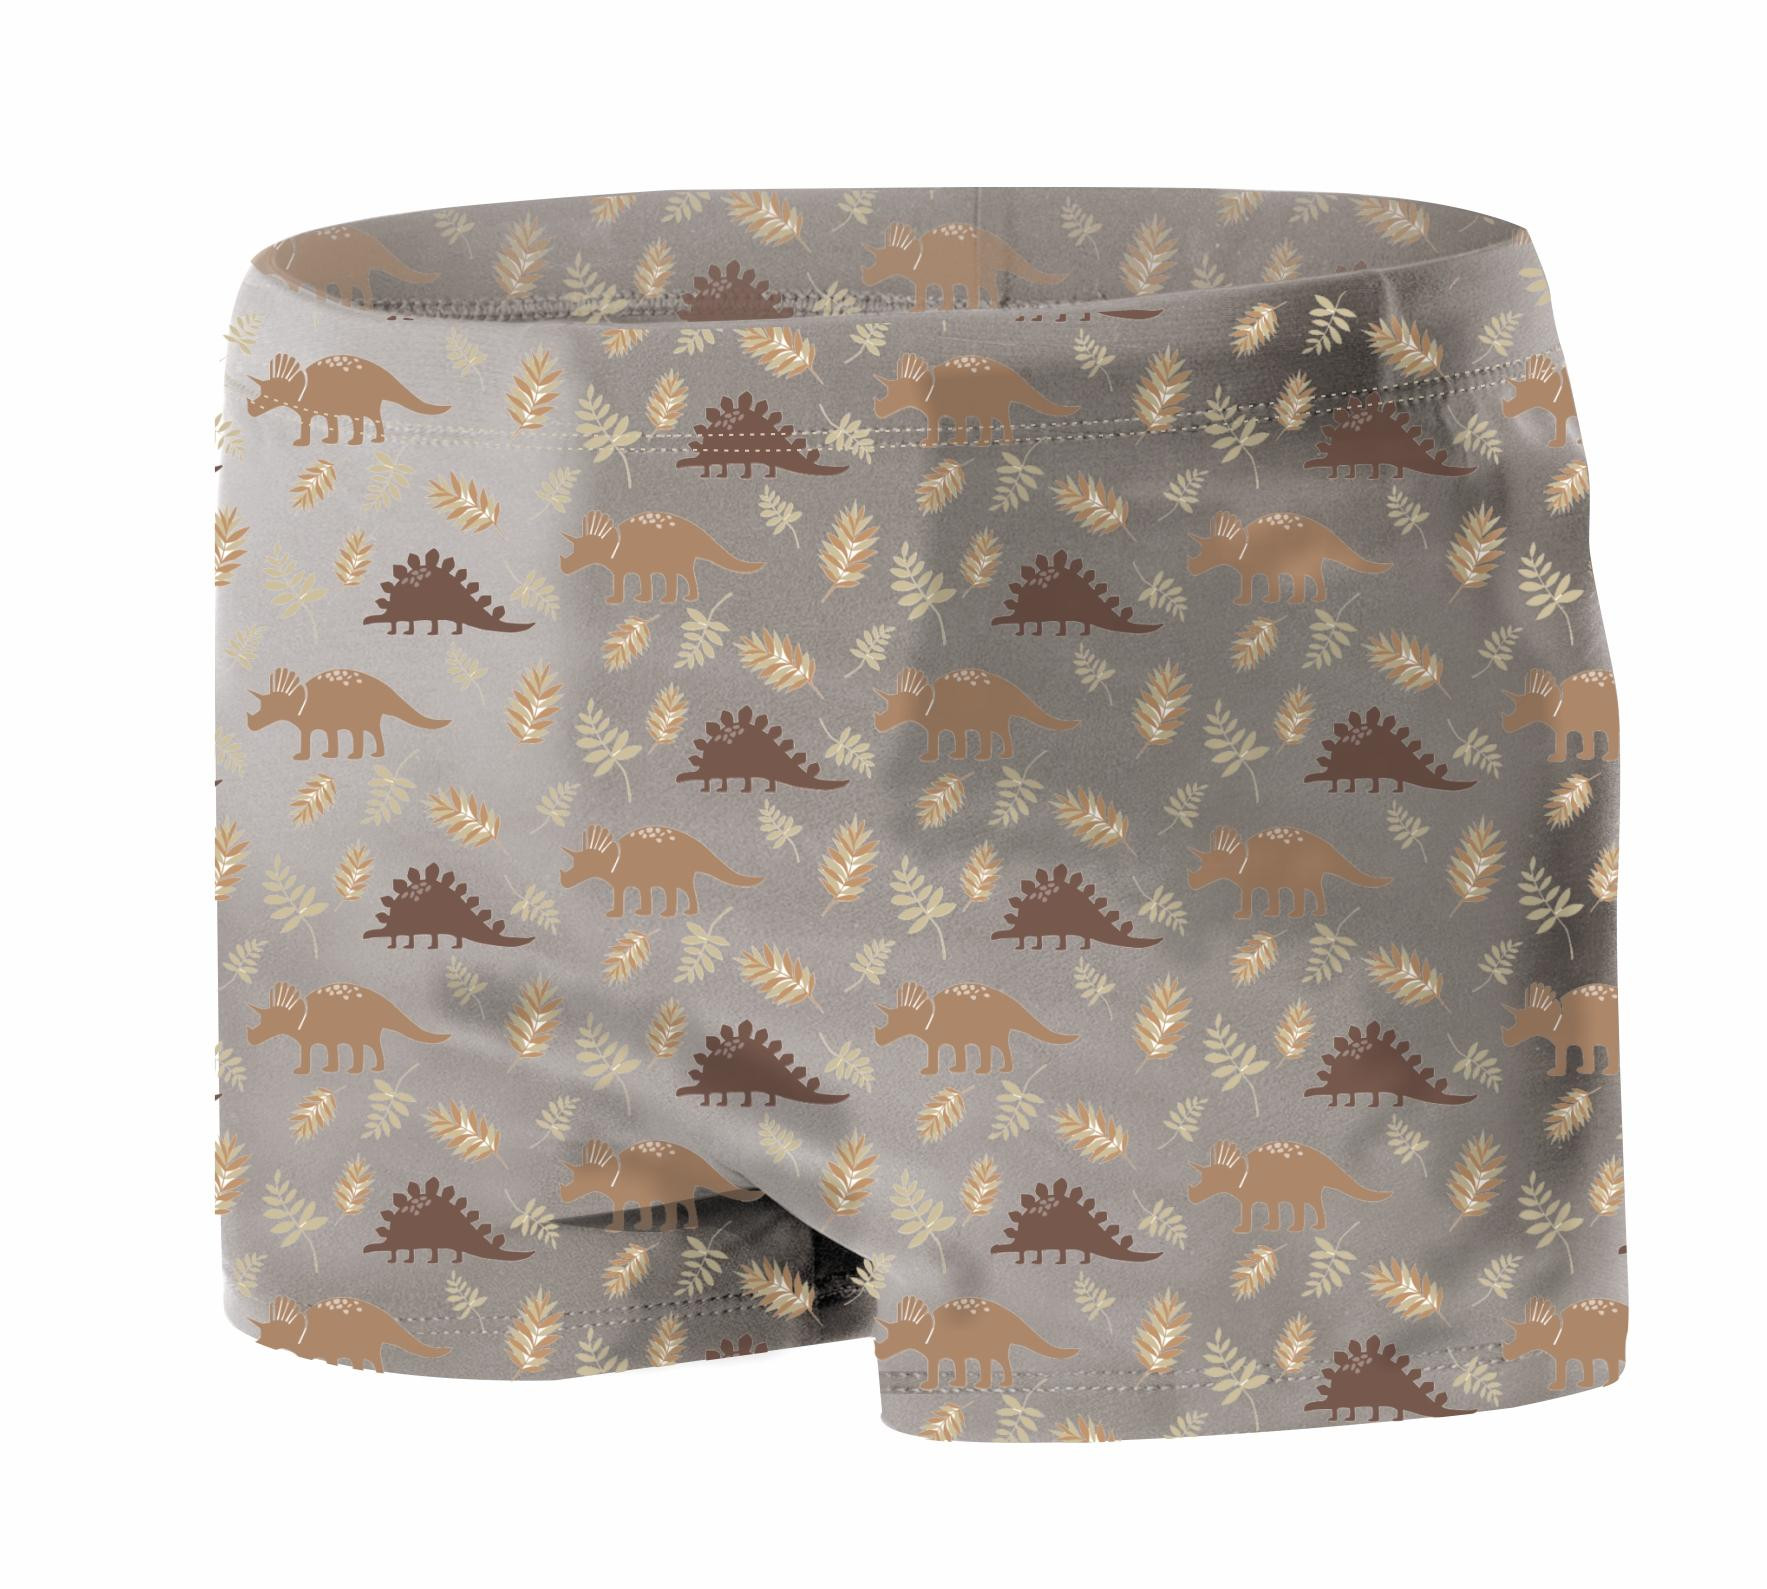 Boy's swim trunks - BROWN DINOSAURS PAT. 4  - sewing set